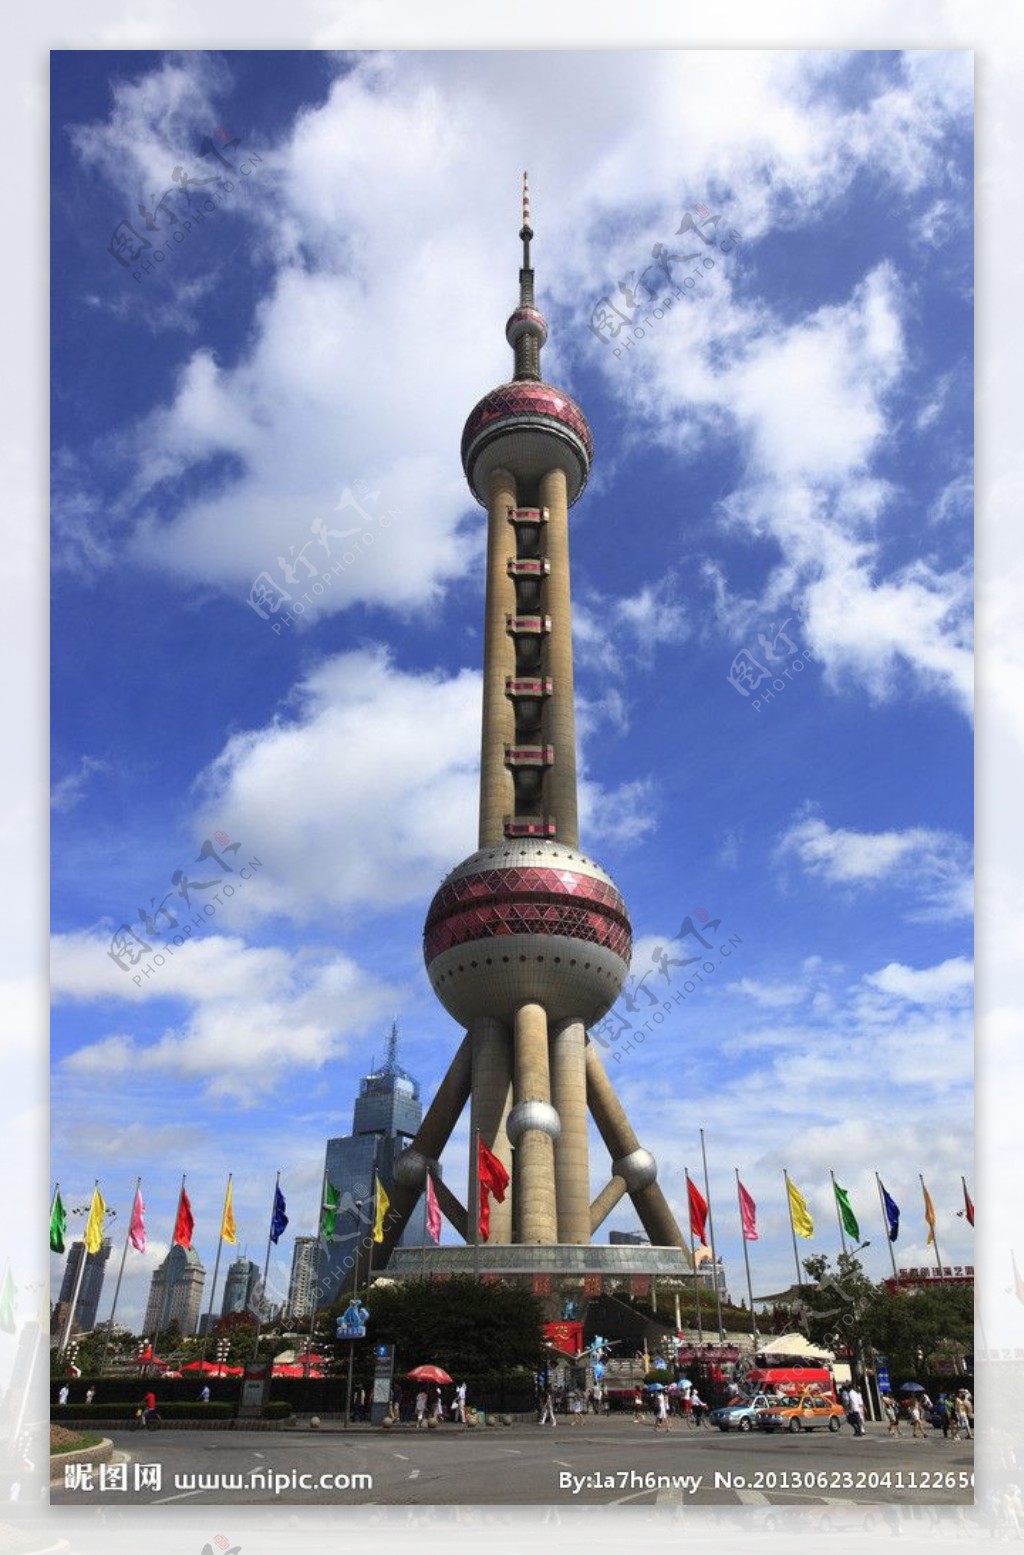 青岛电视塔 - Qingdao TV Tower | World Tower